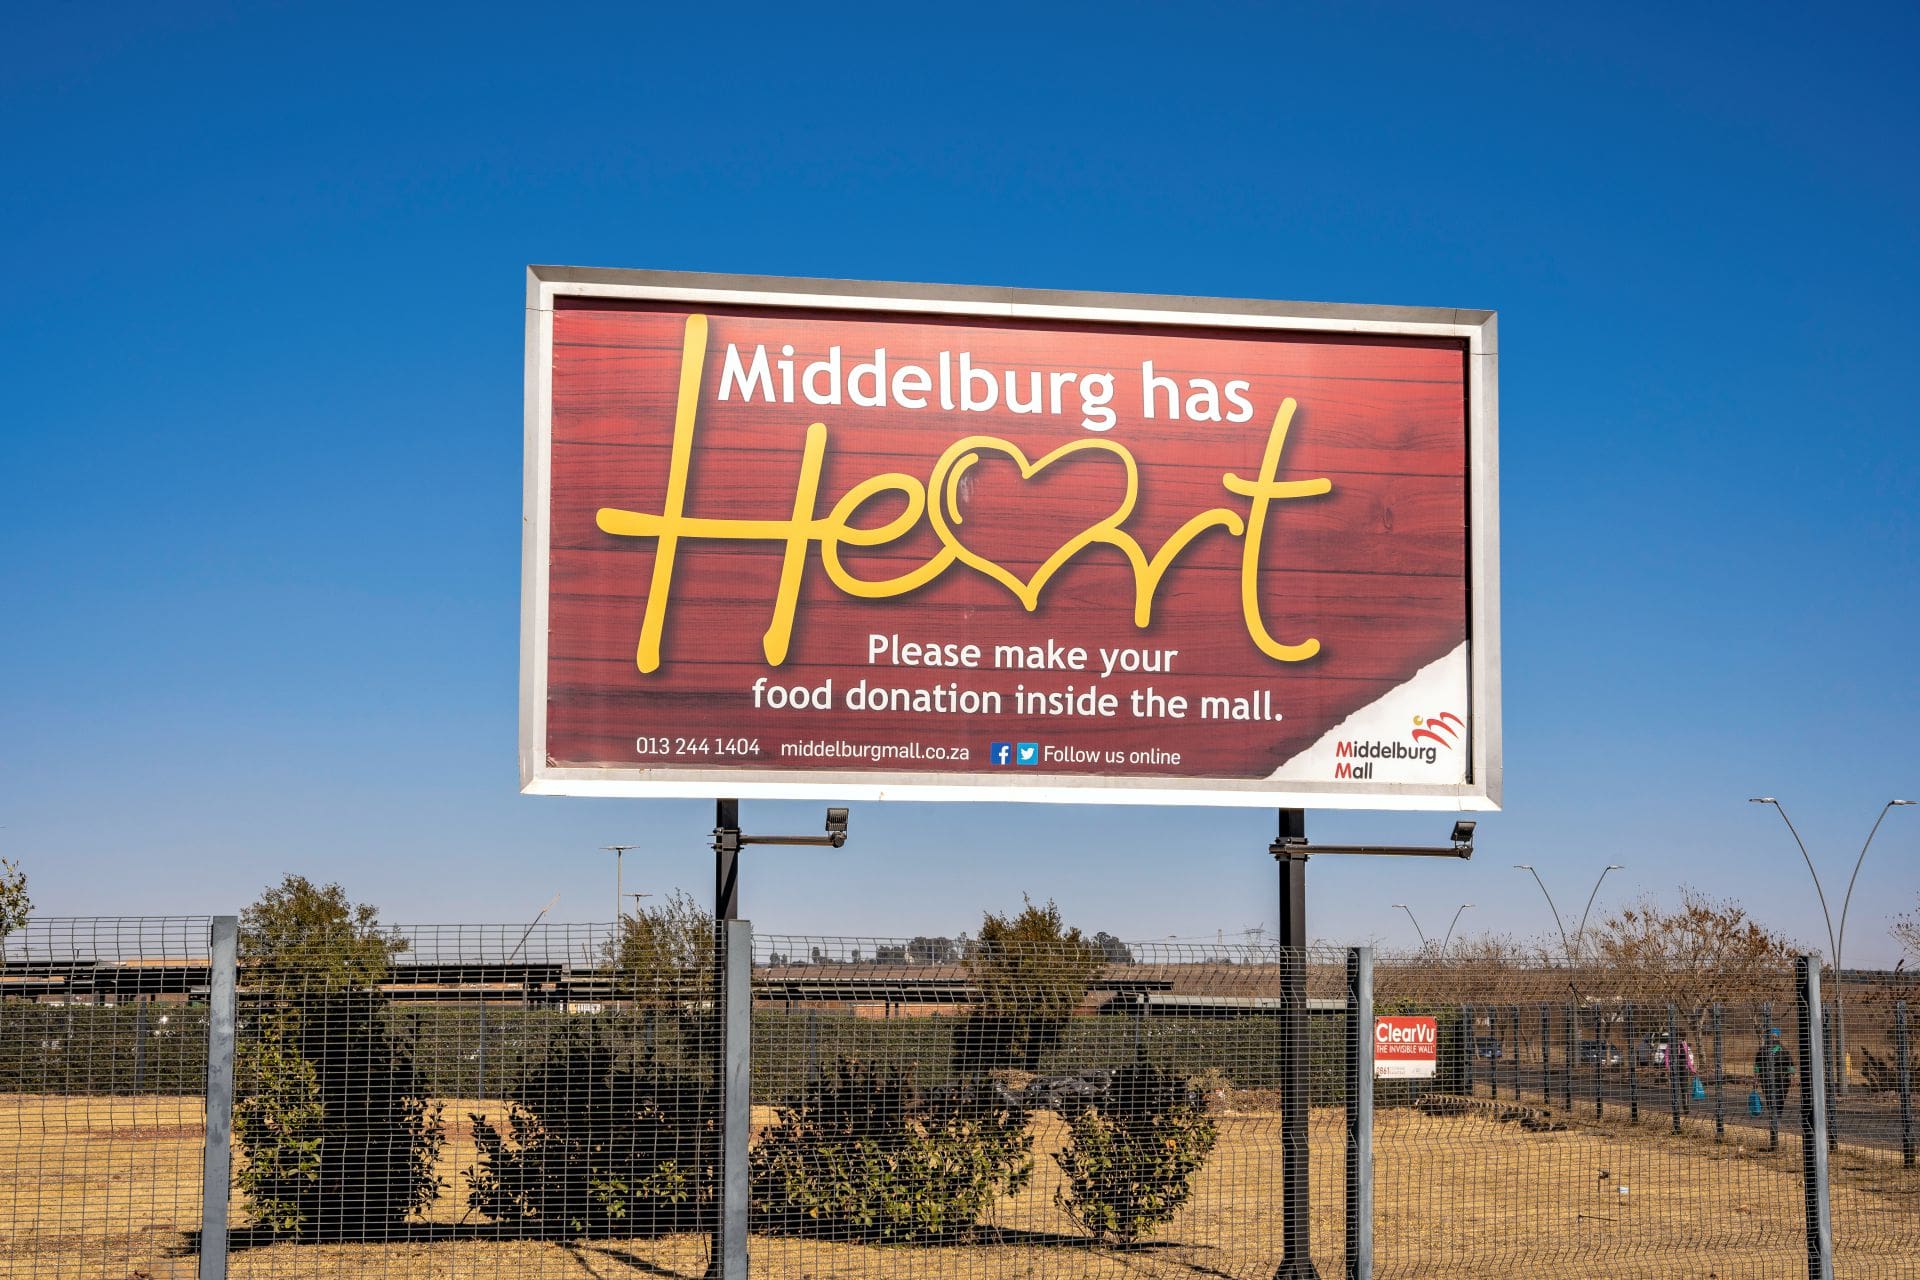 Middelburg Mall Middelburg has Heart Bill Board